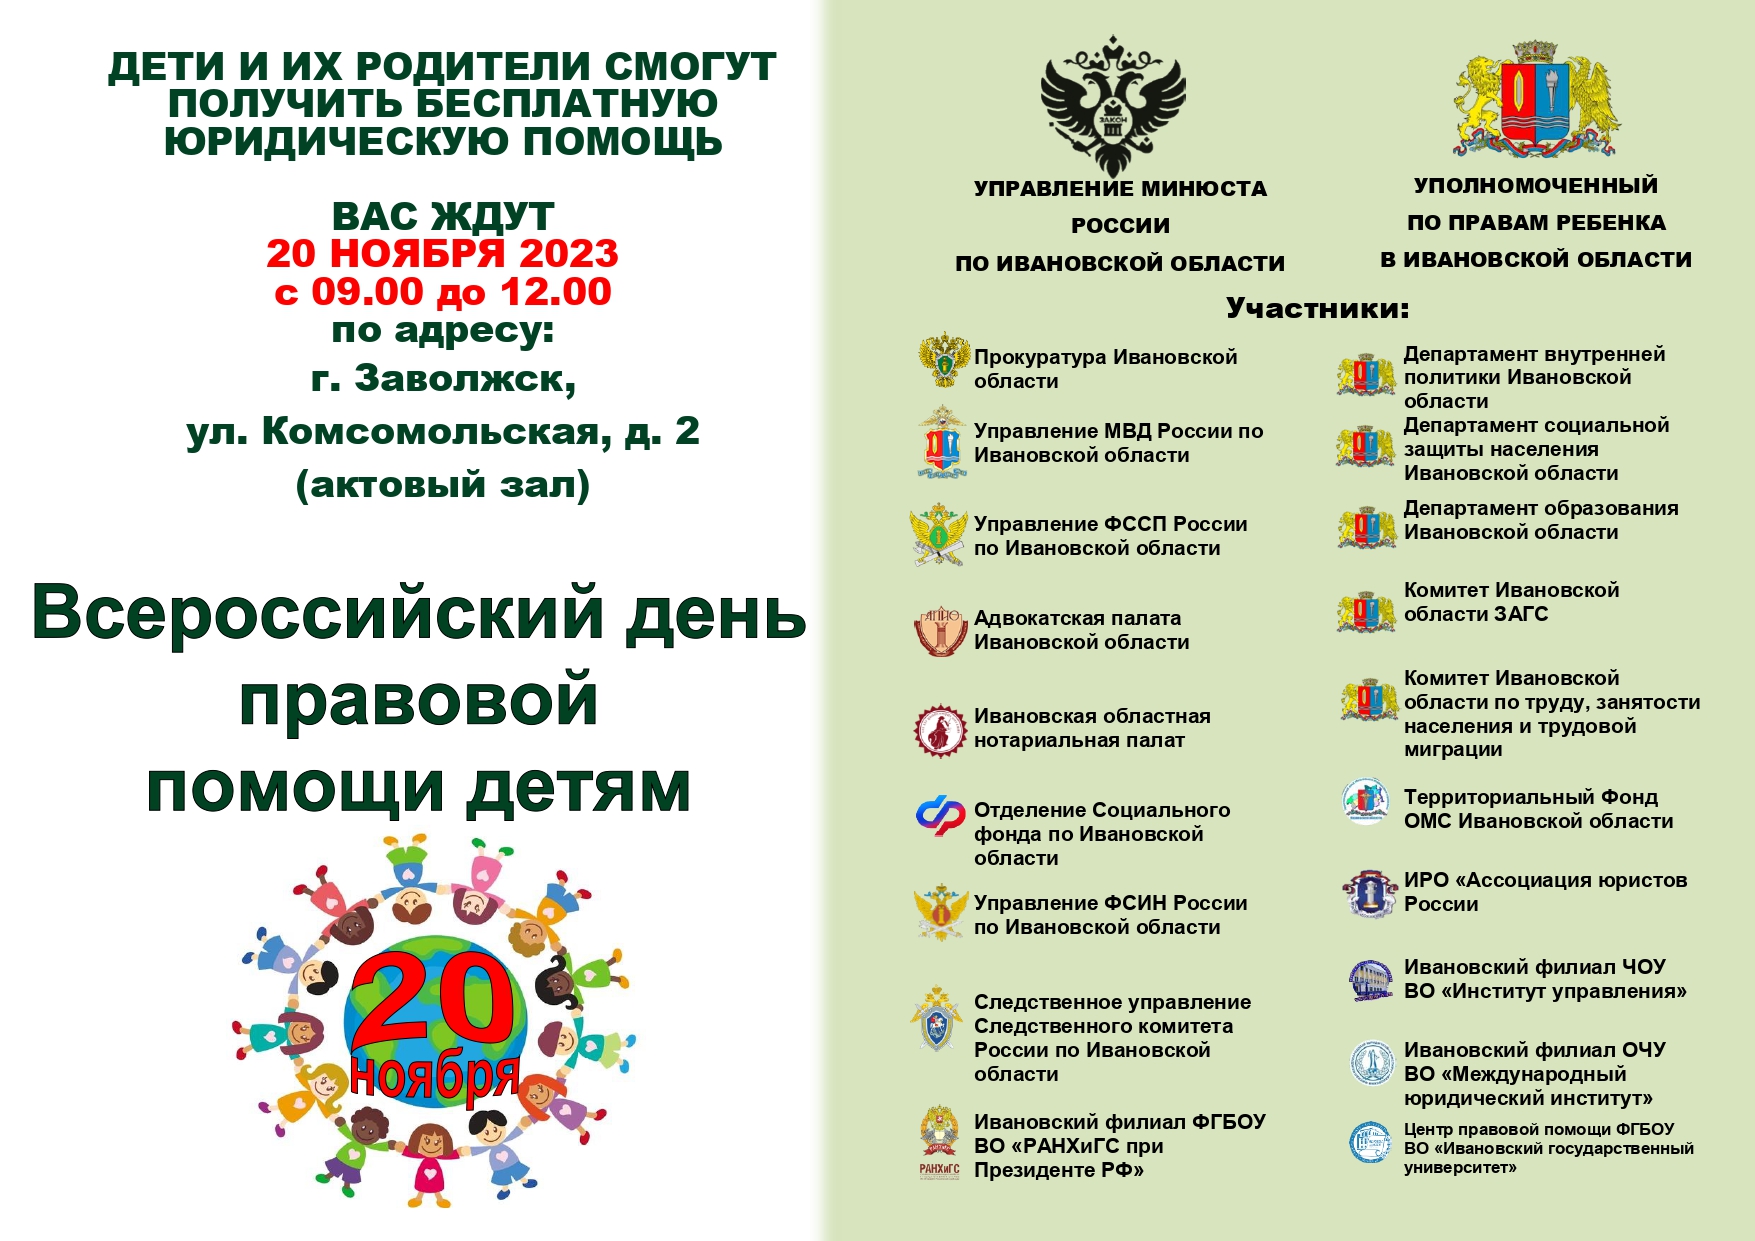 Всероссийский день Правовой помощи детям